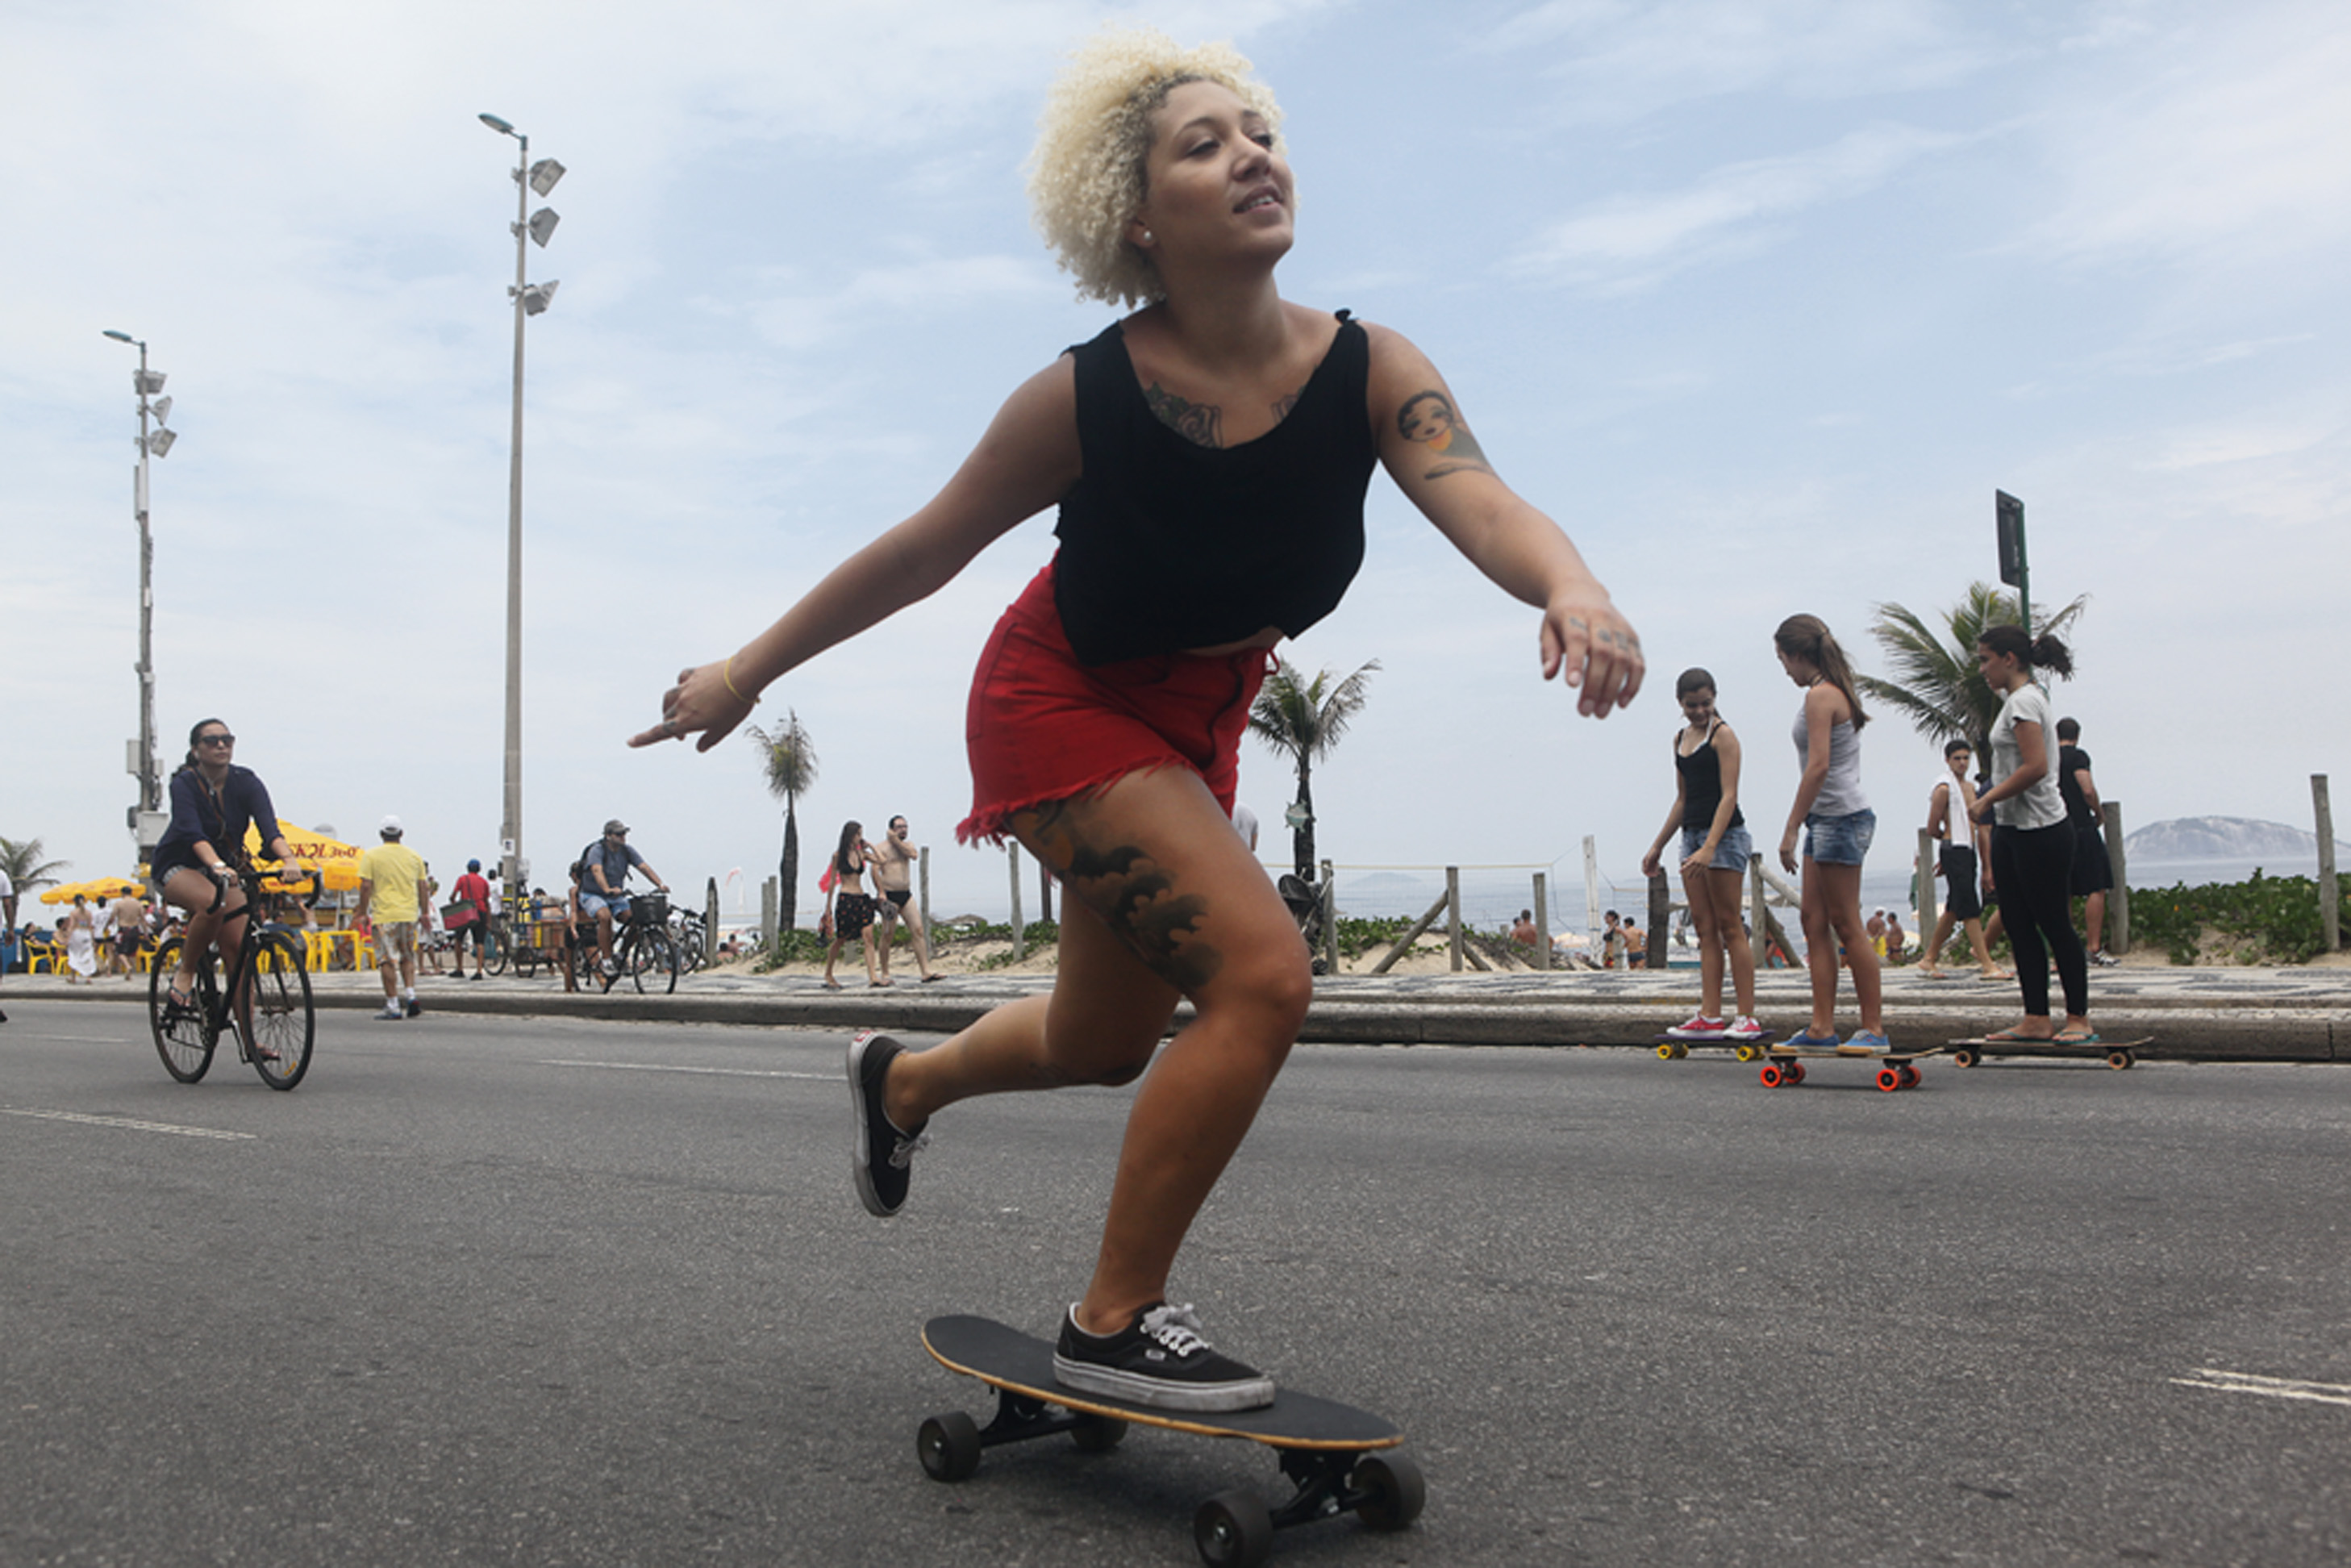 Camila de Alexandre, 23 anos, maquiadora, usa Skate tradicional. “Seja persistente e ouça música para dar um clima. Eu curto andar ouvindo Mogwai e Fugazi.”